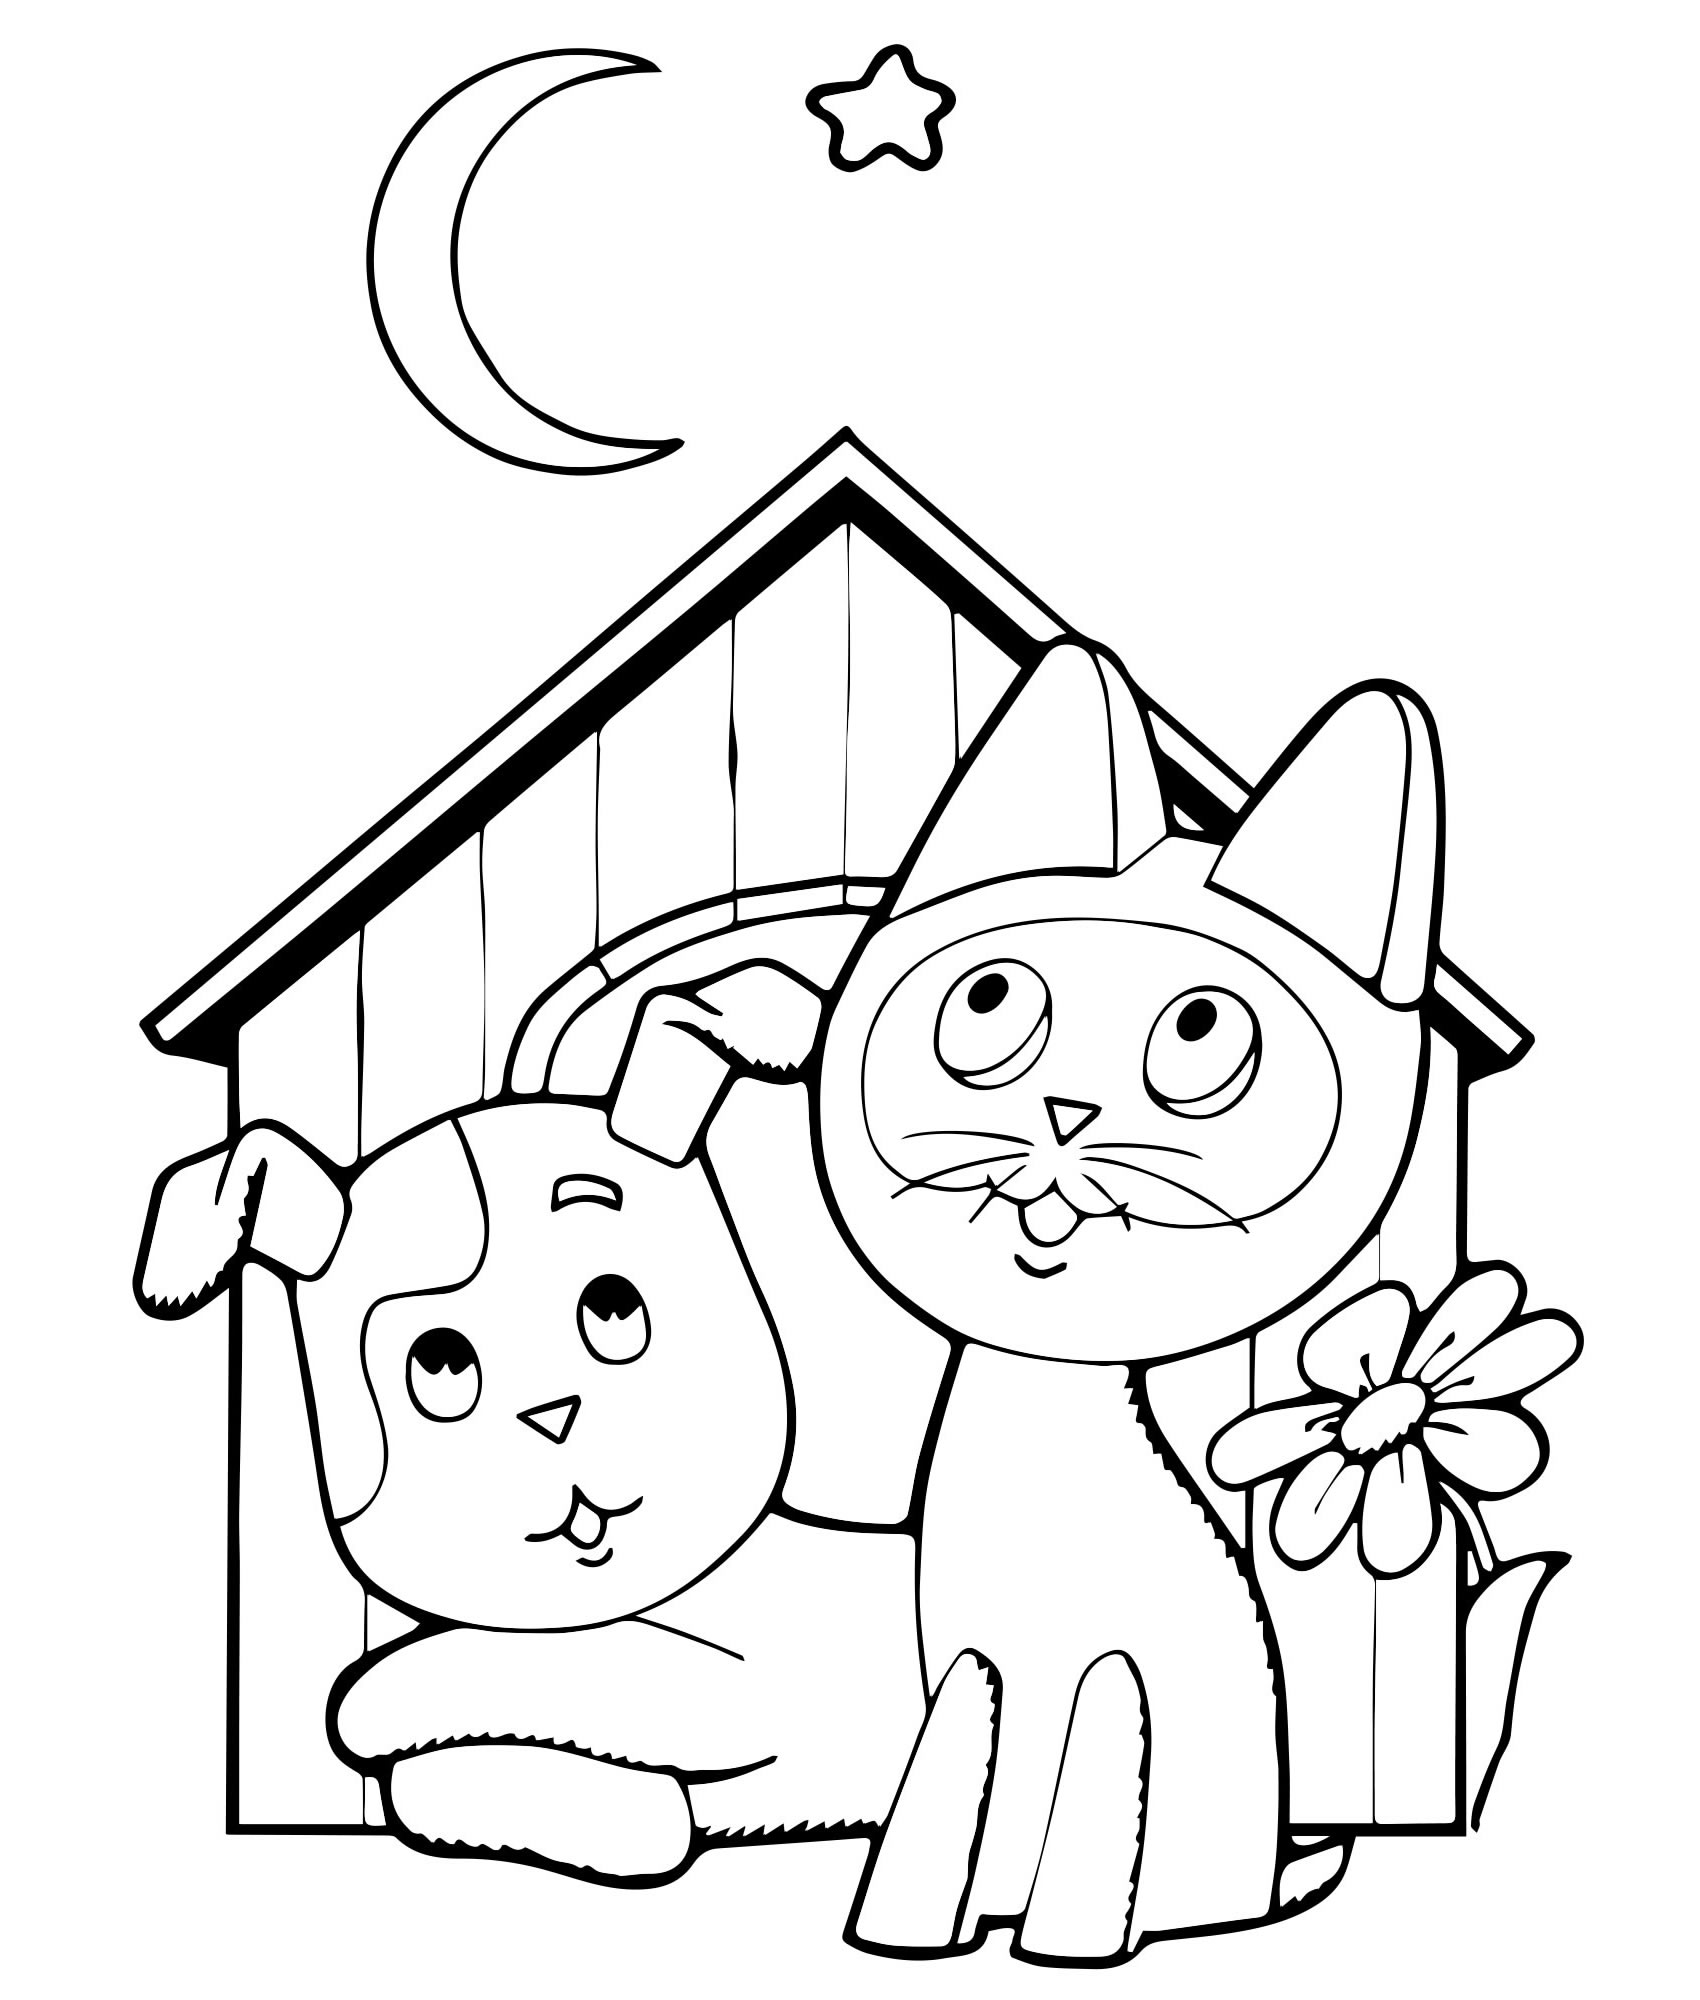 Котенок Гав и щенок в будке раскраска для детей